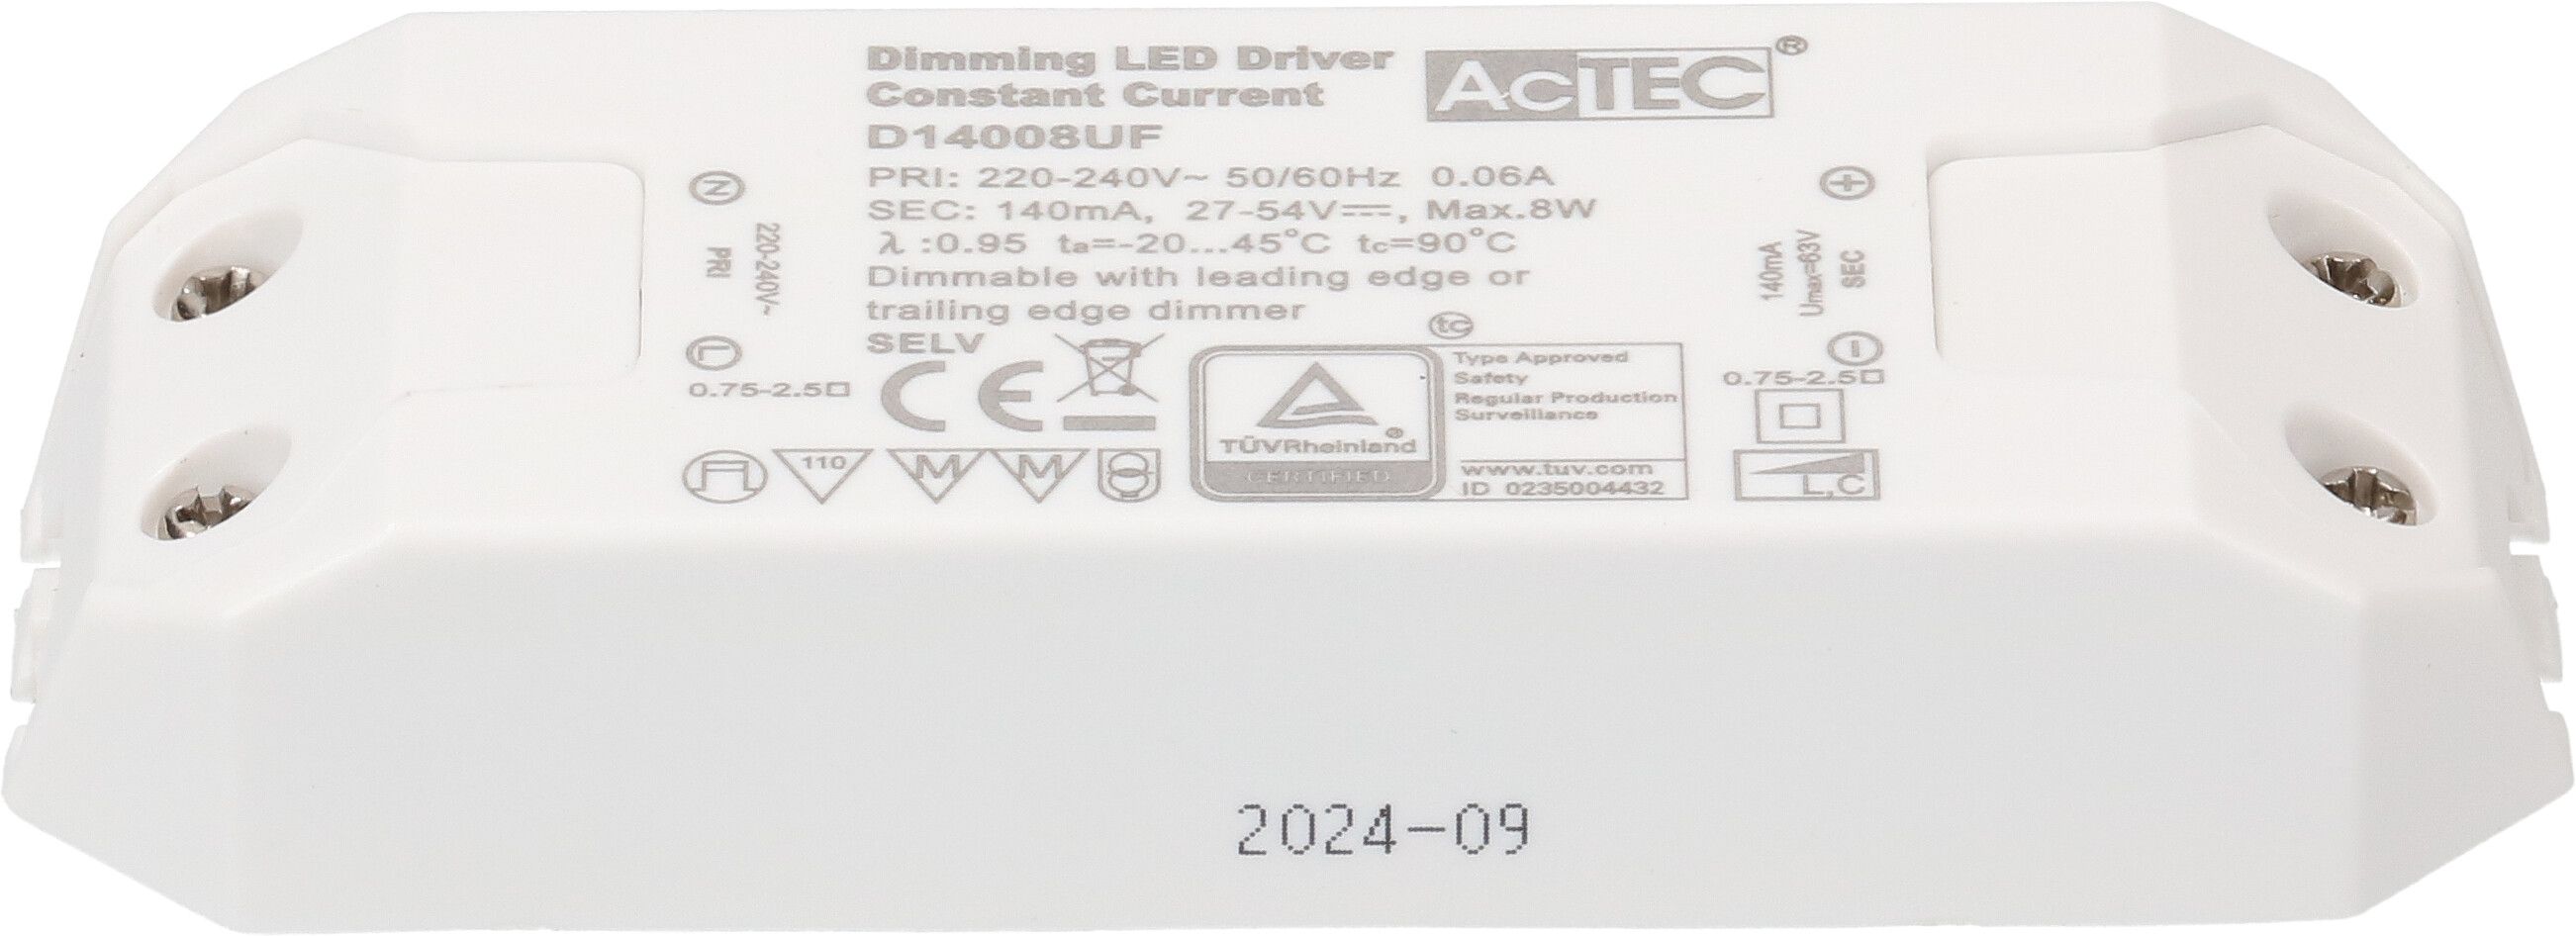 LED-Konstantstromtreiber 140mA 8W